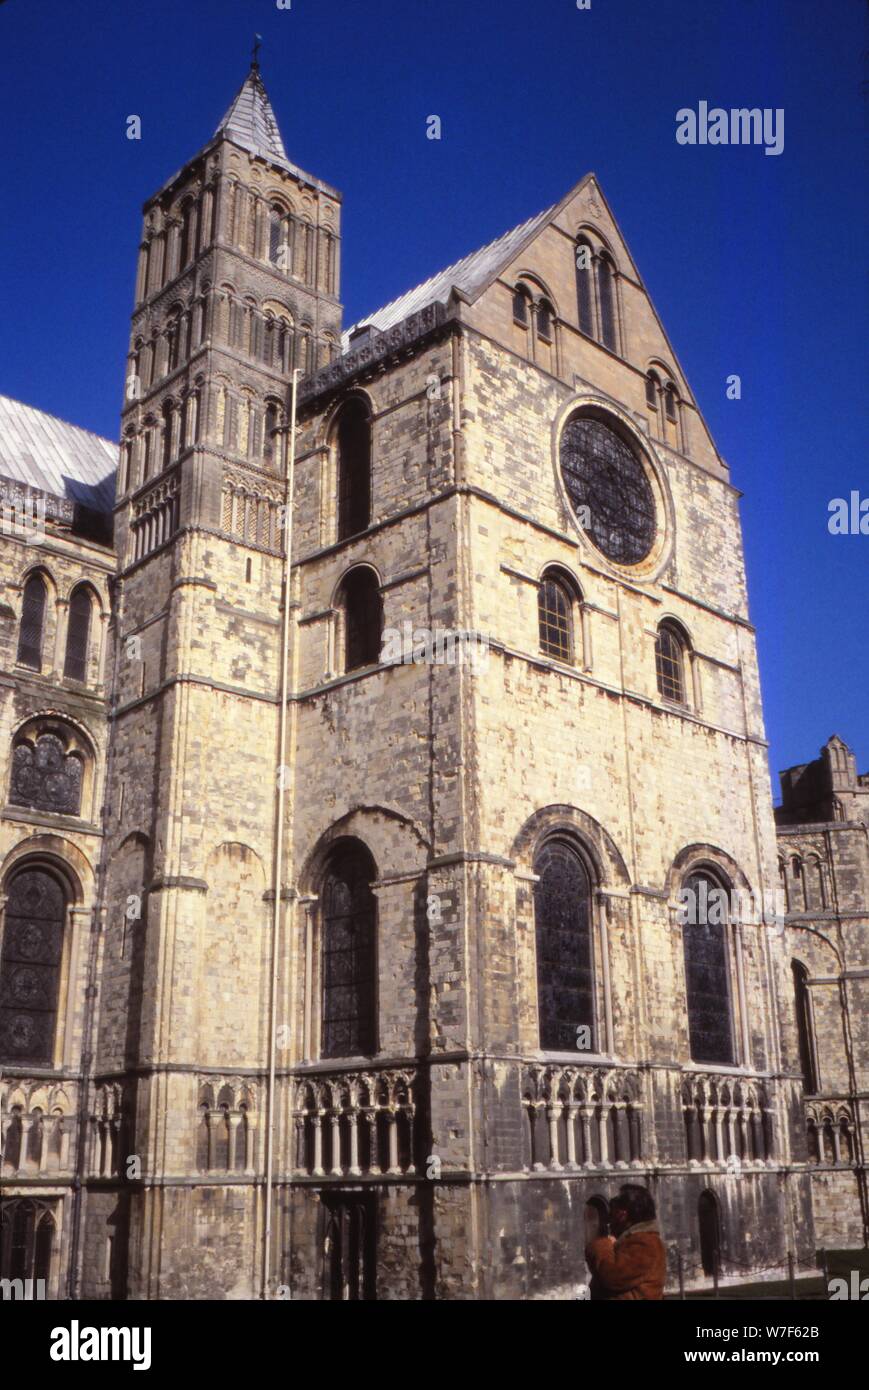 Du transept, La Cathédrale de Canterbury, 20e siècle. Artiste : CM Dixon. Banque D'Images